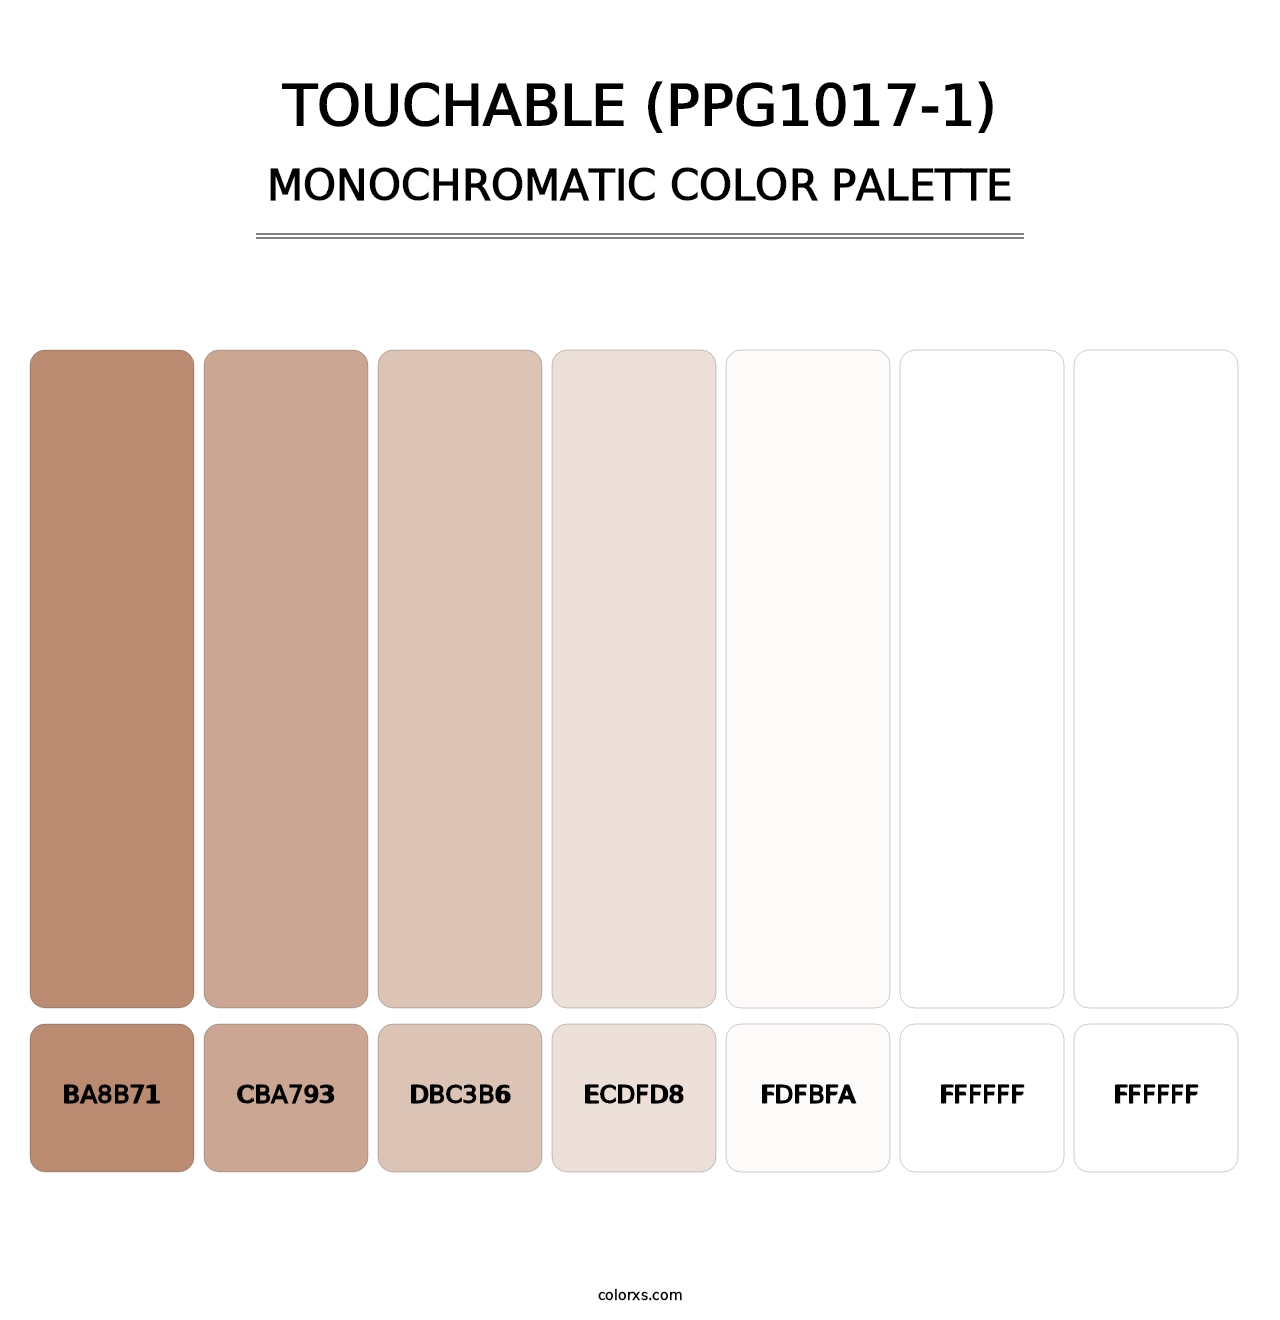 Touchable (PPG1017-1) - Monochromatic Color Palette